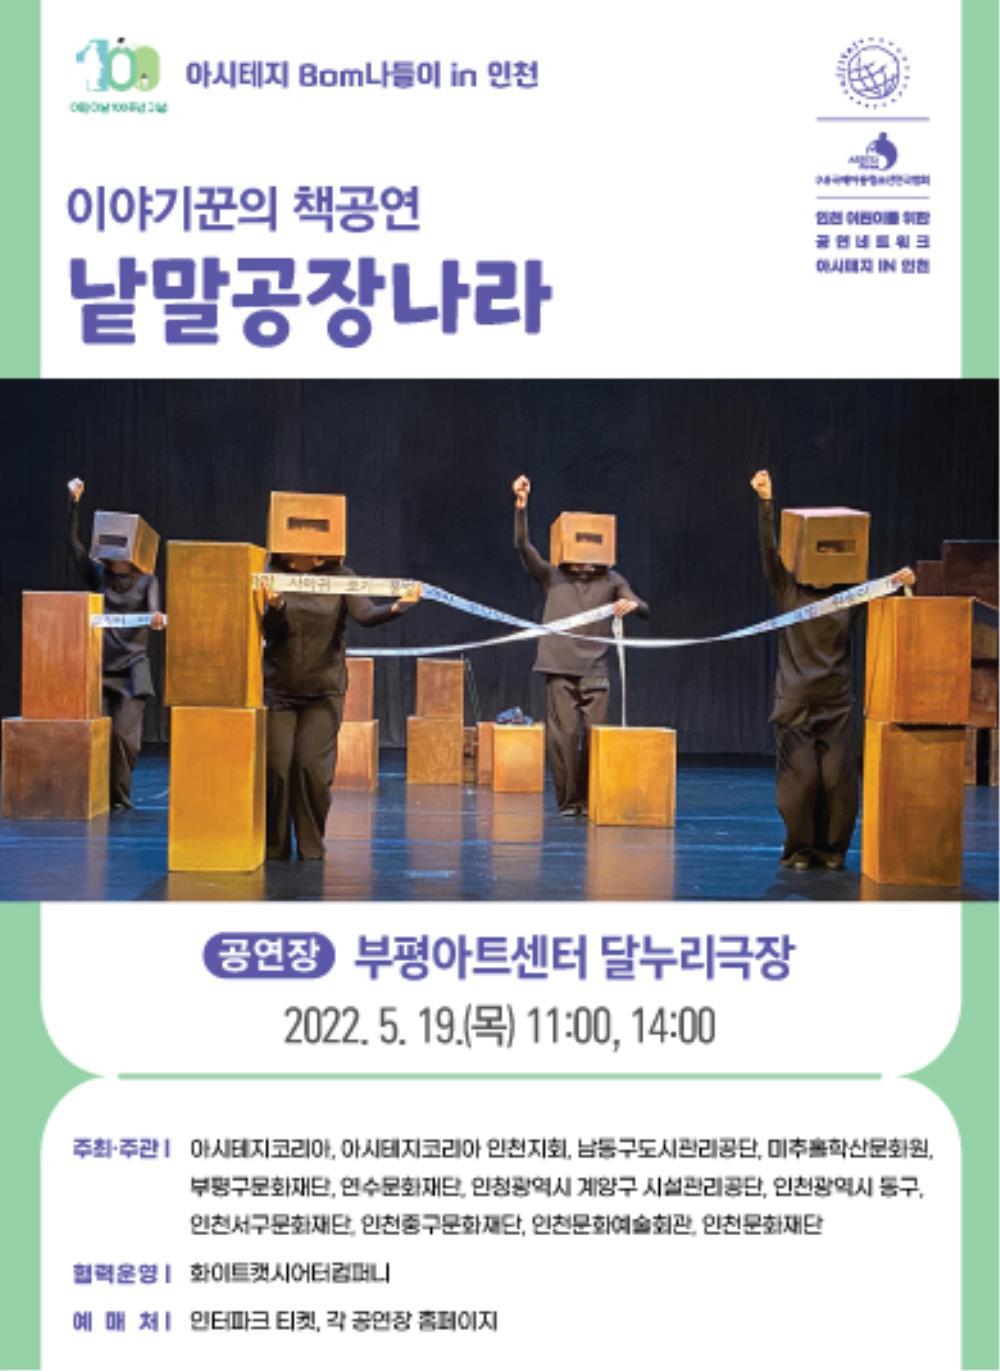 아시테지 봄나들이 in 인천 - <낱말공장나라> 포스터 이미지